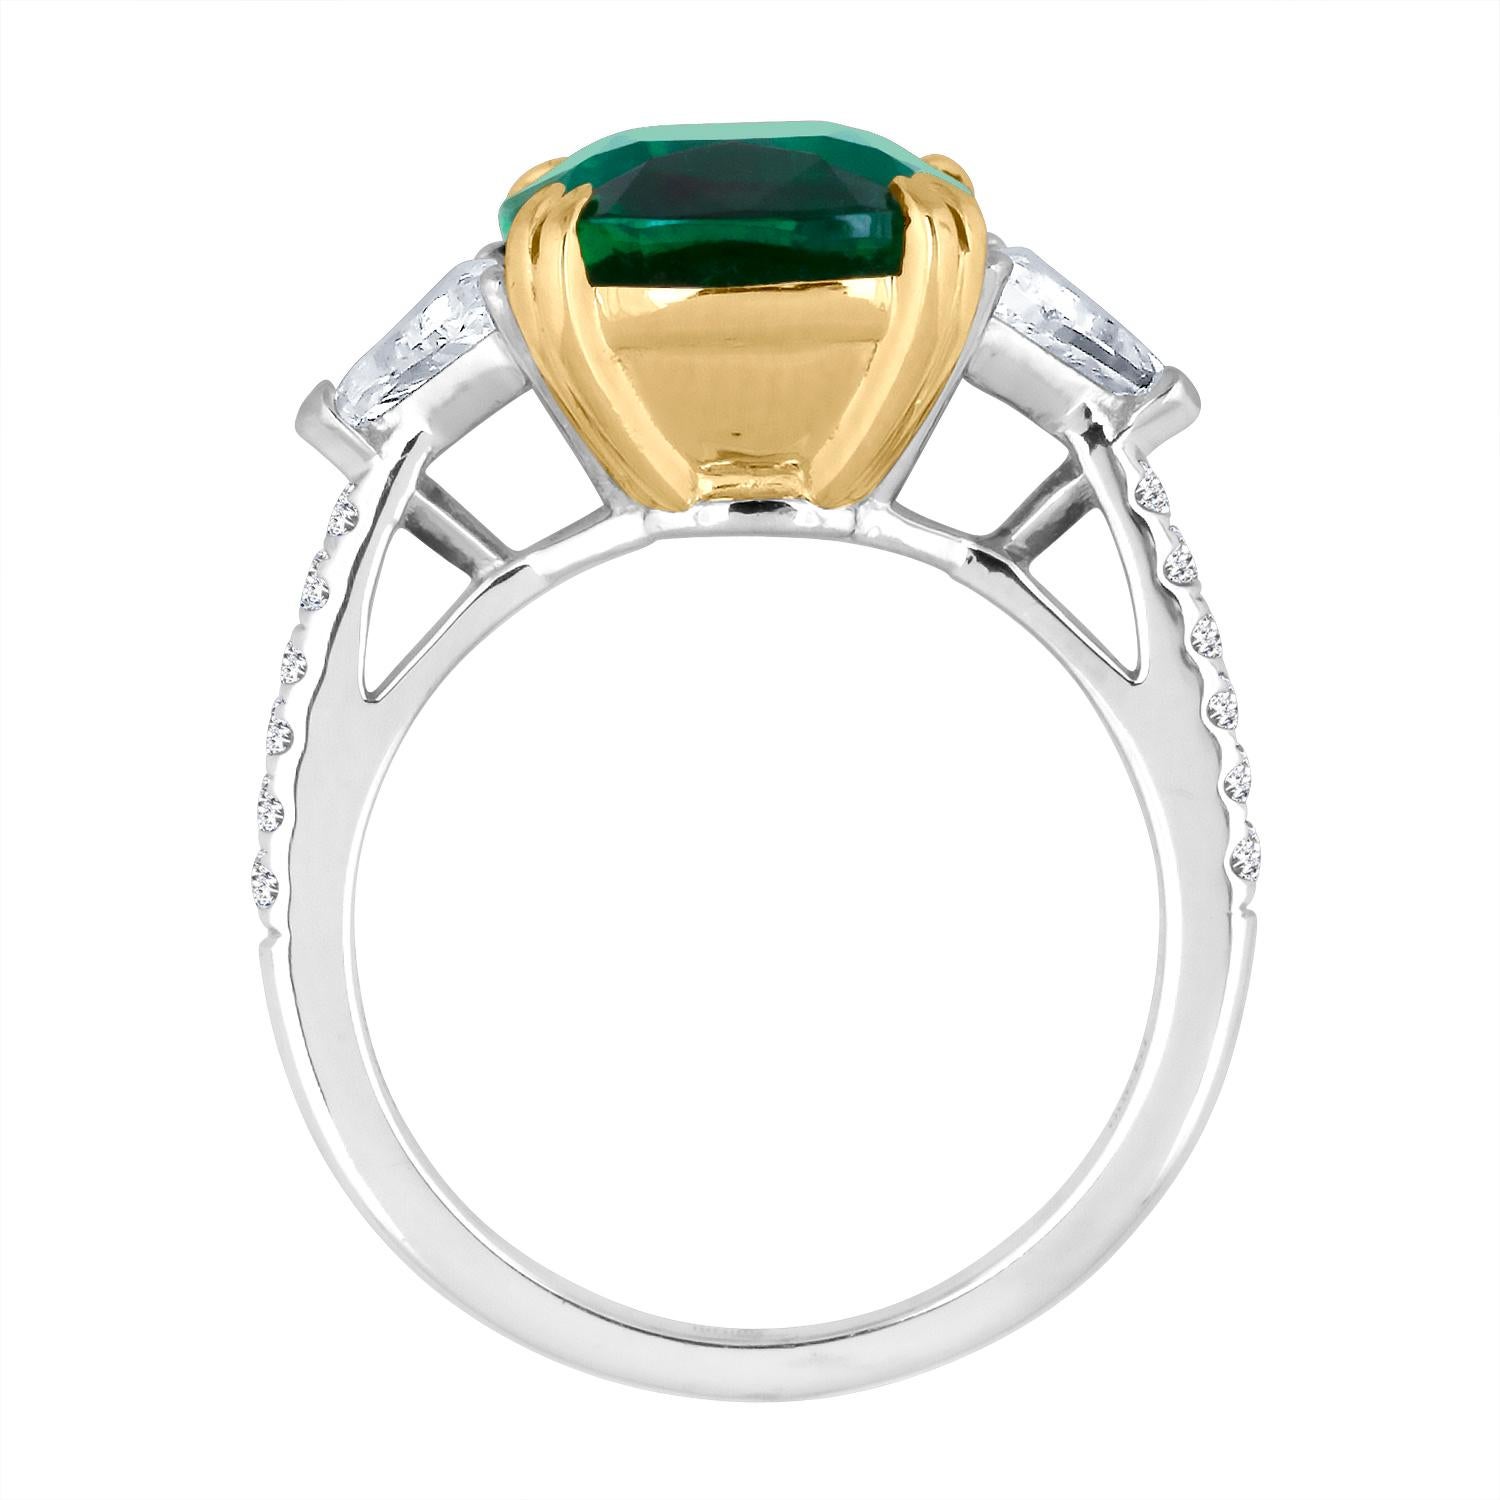 Emilio Jewelry Certified 6.26 Carat Genuine Emerald Diamond Platinum Ring 1